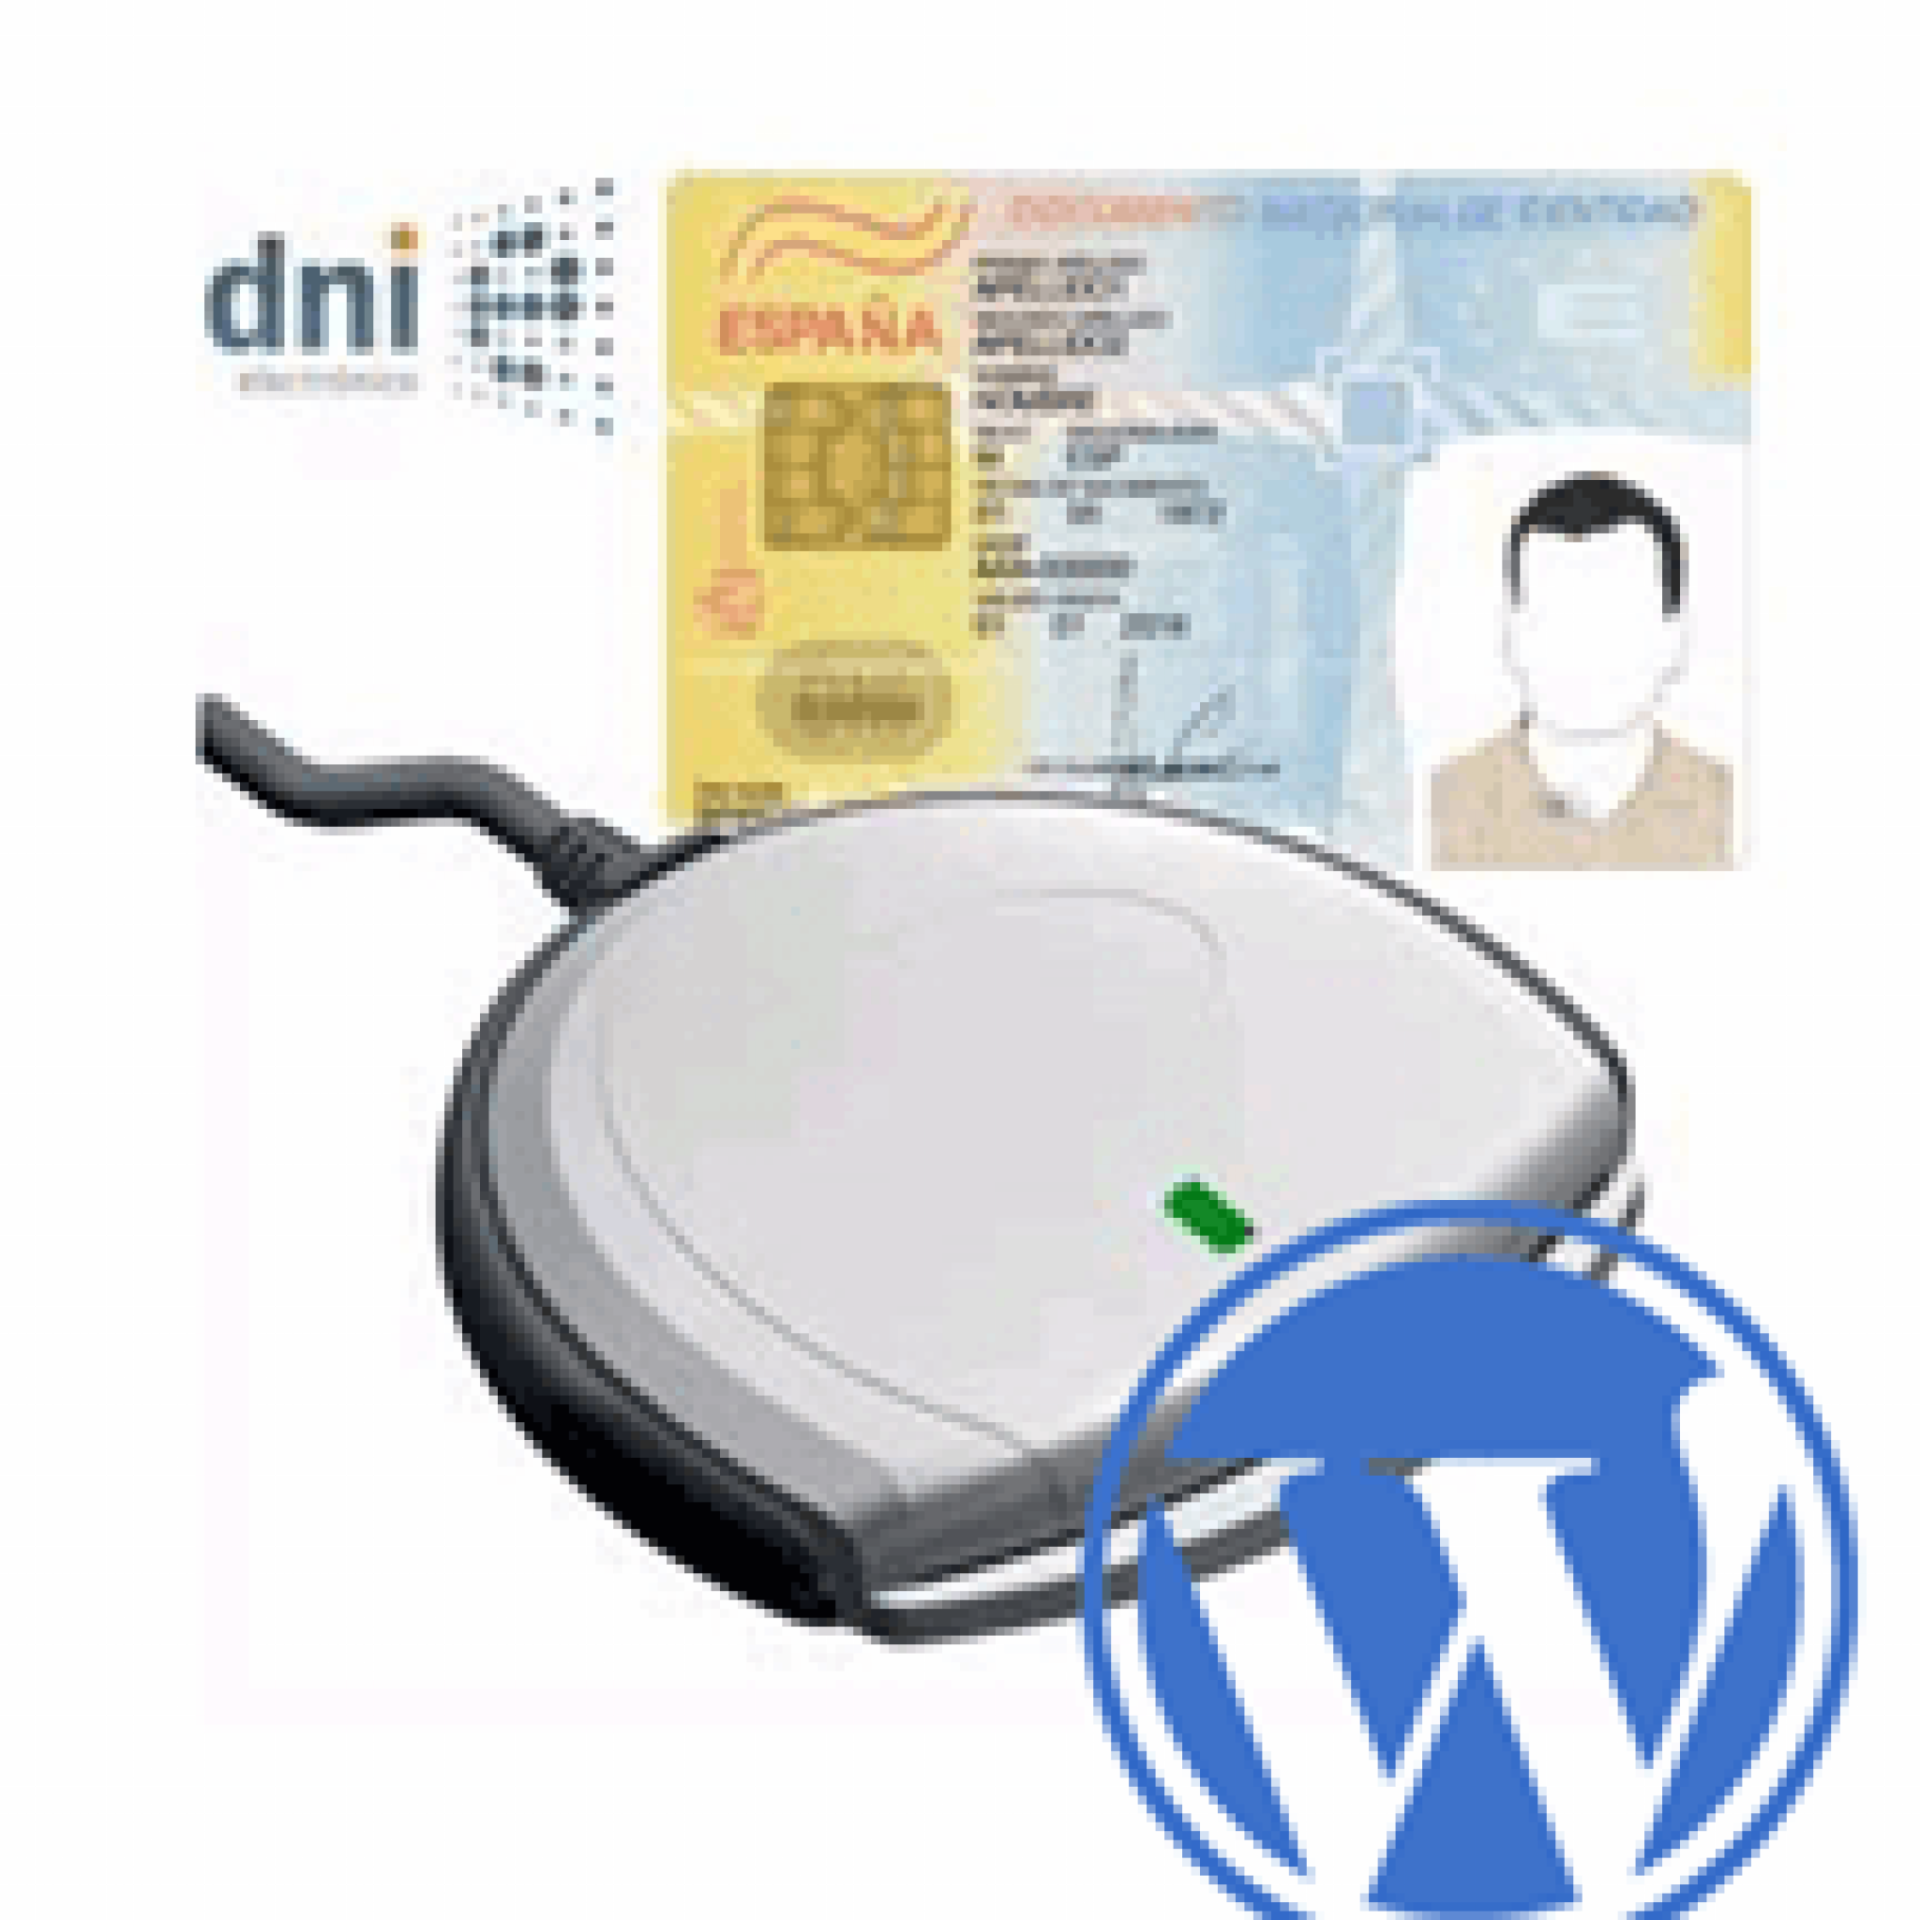 Cómo Instalar El Plugin Verificación De Identidad Para Wordpress